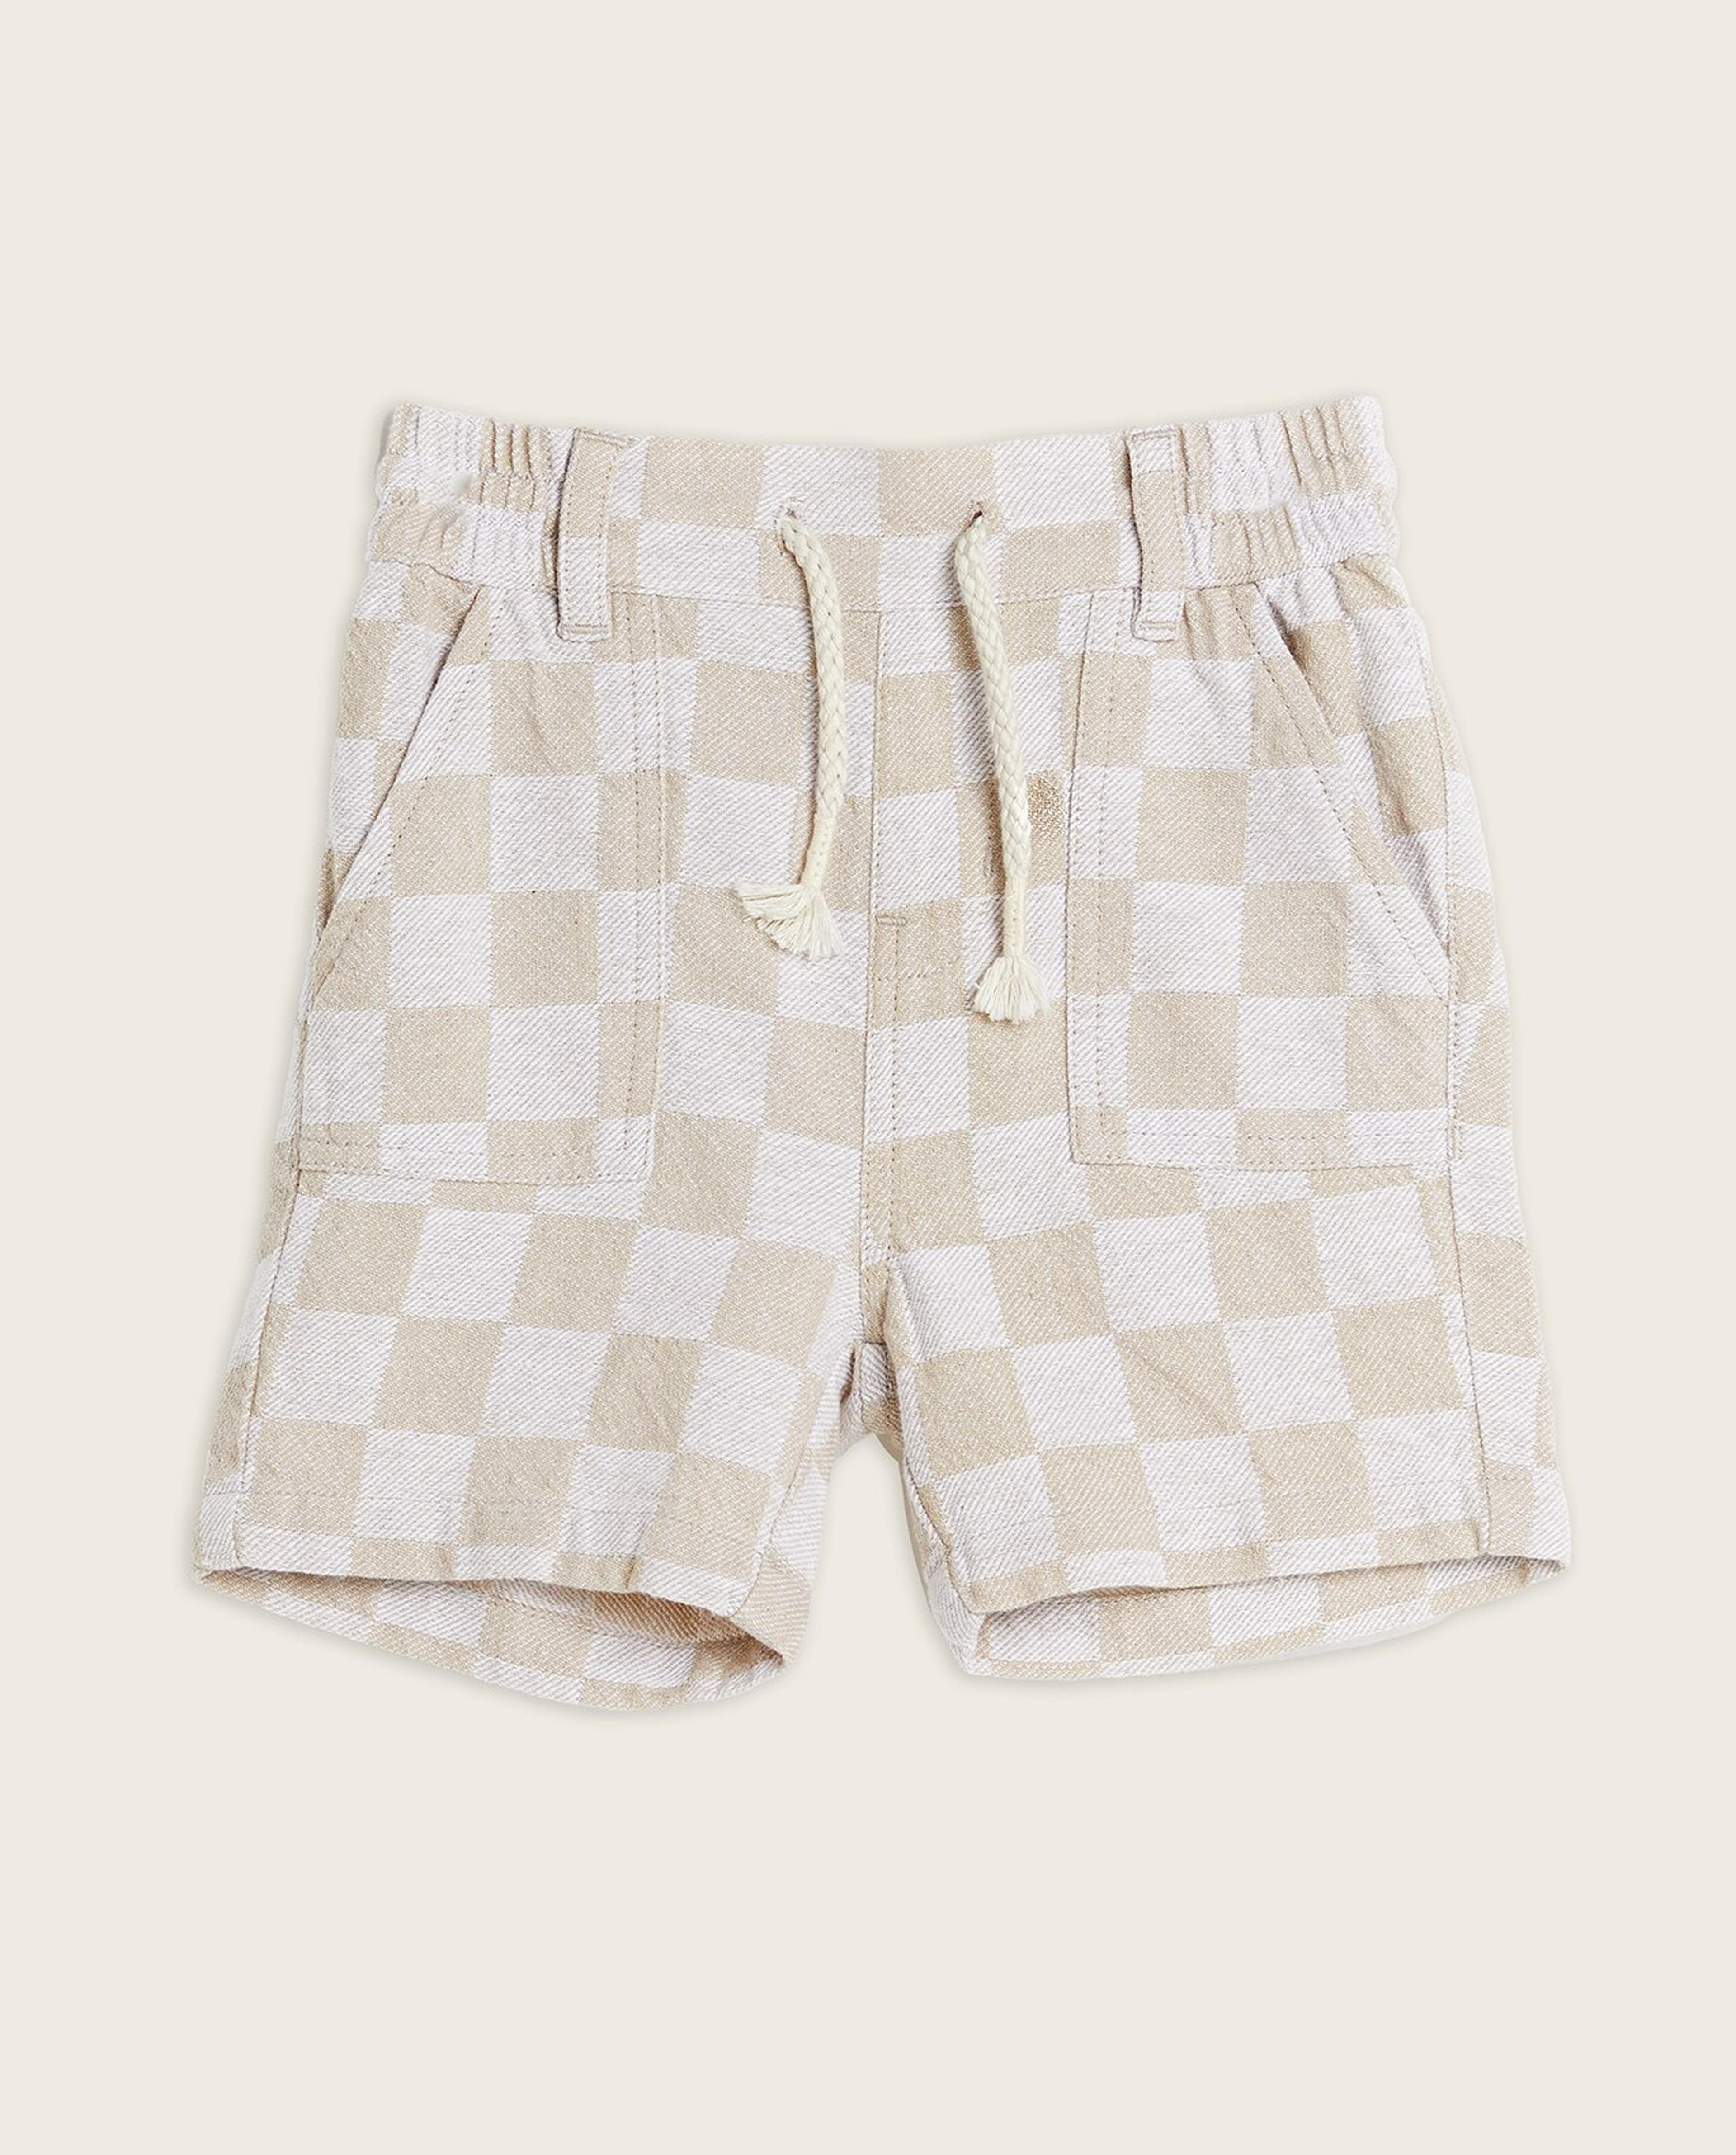 Checkered T-Shirt and Shorts Set